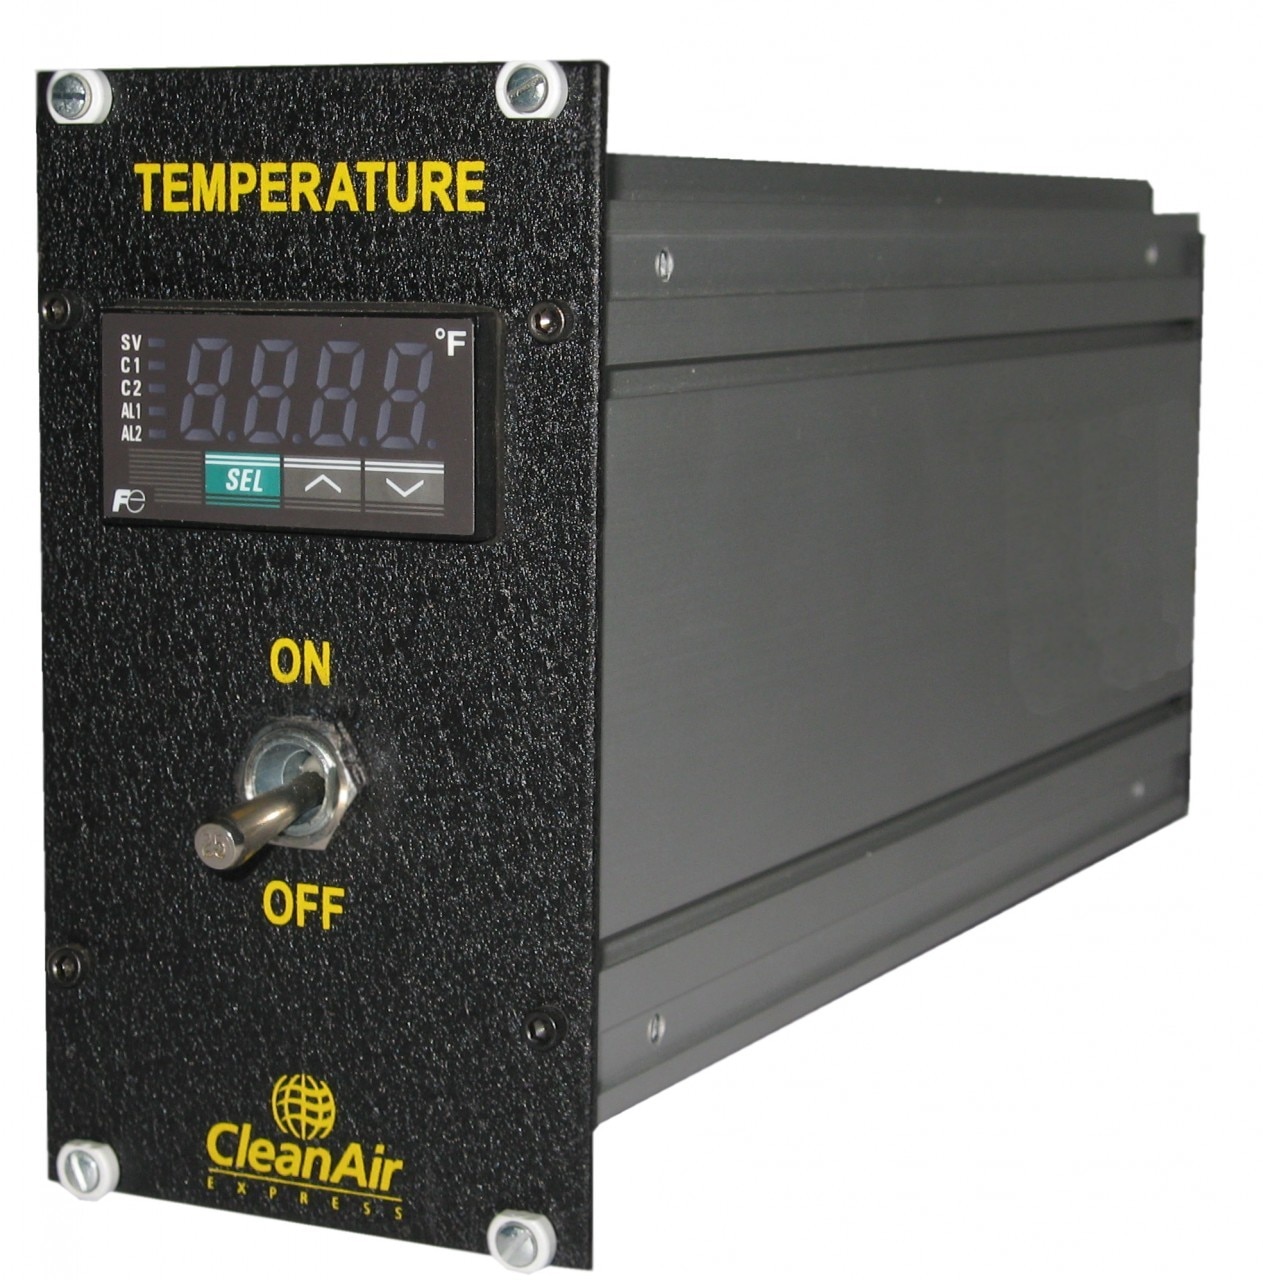 CleanAir Rack-Mount Temperature Controller